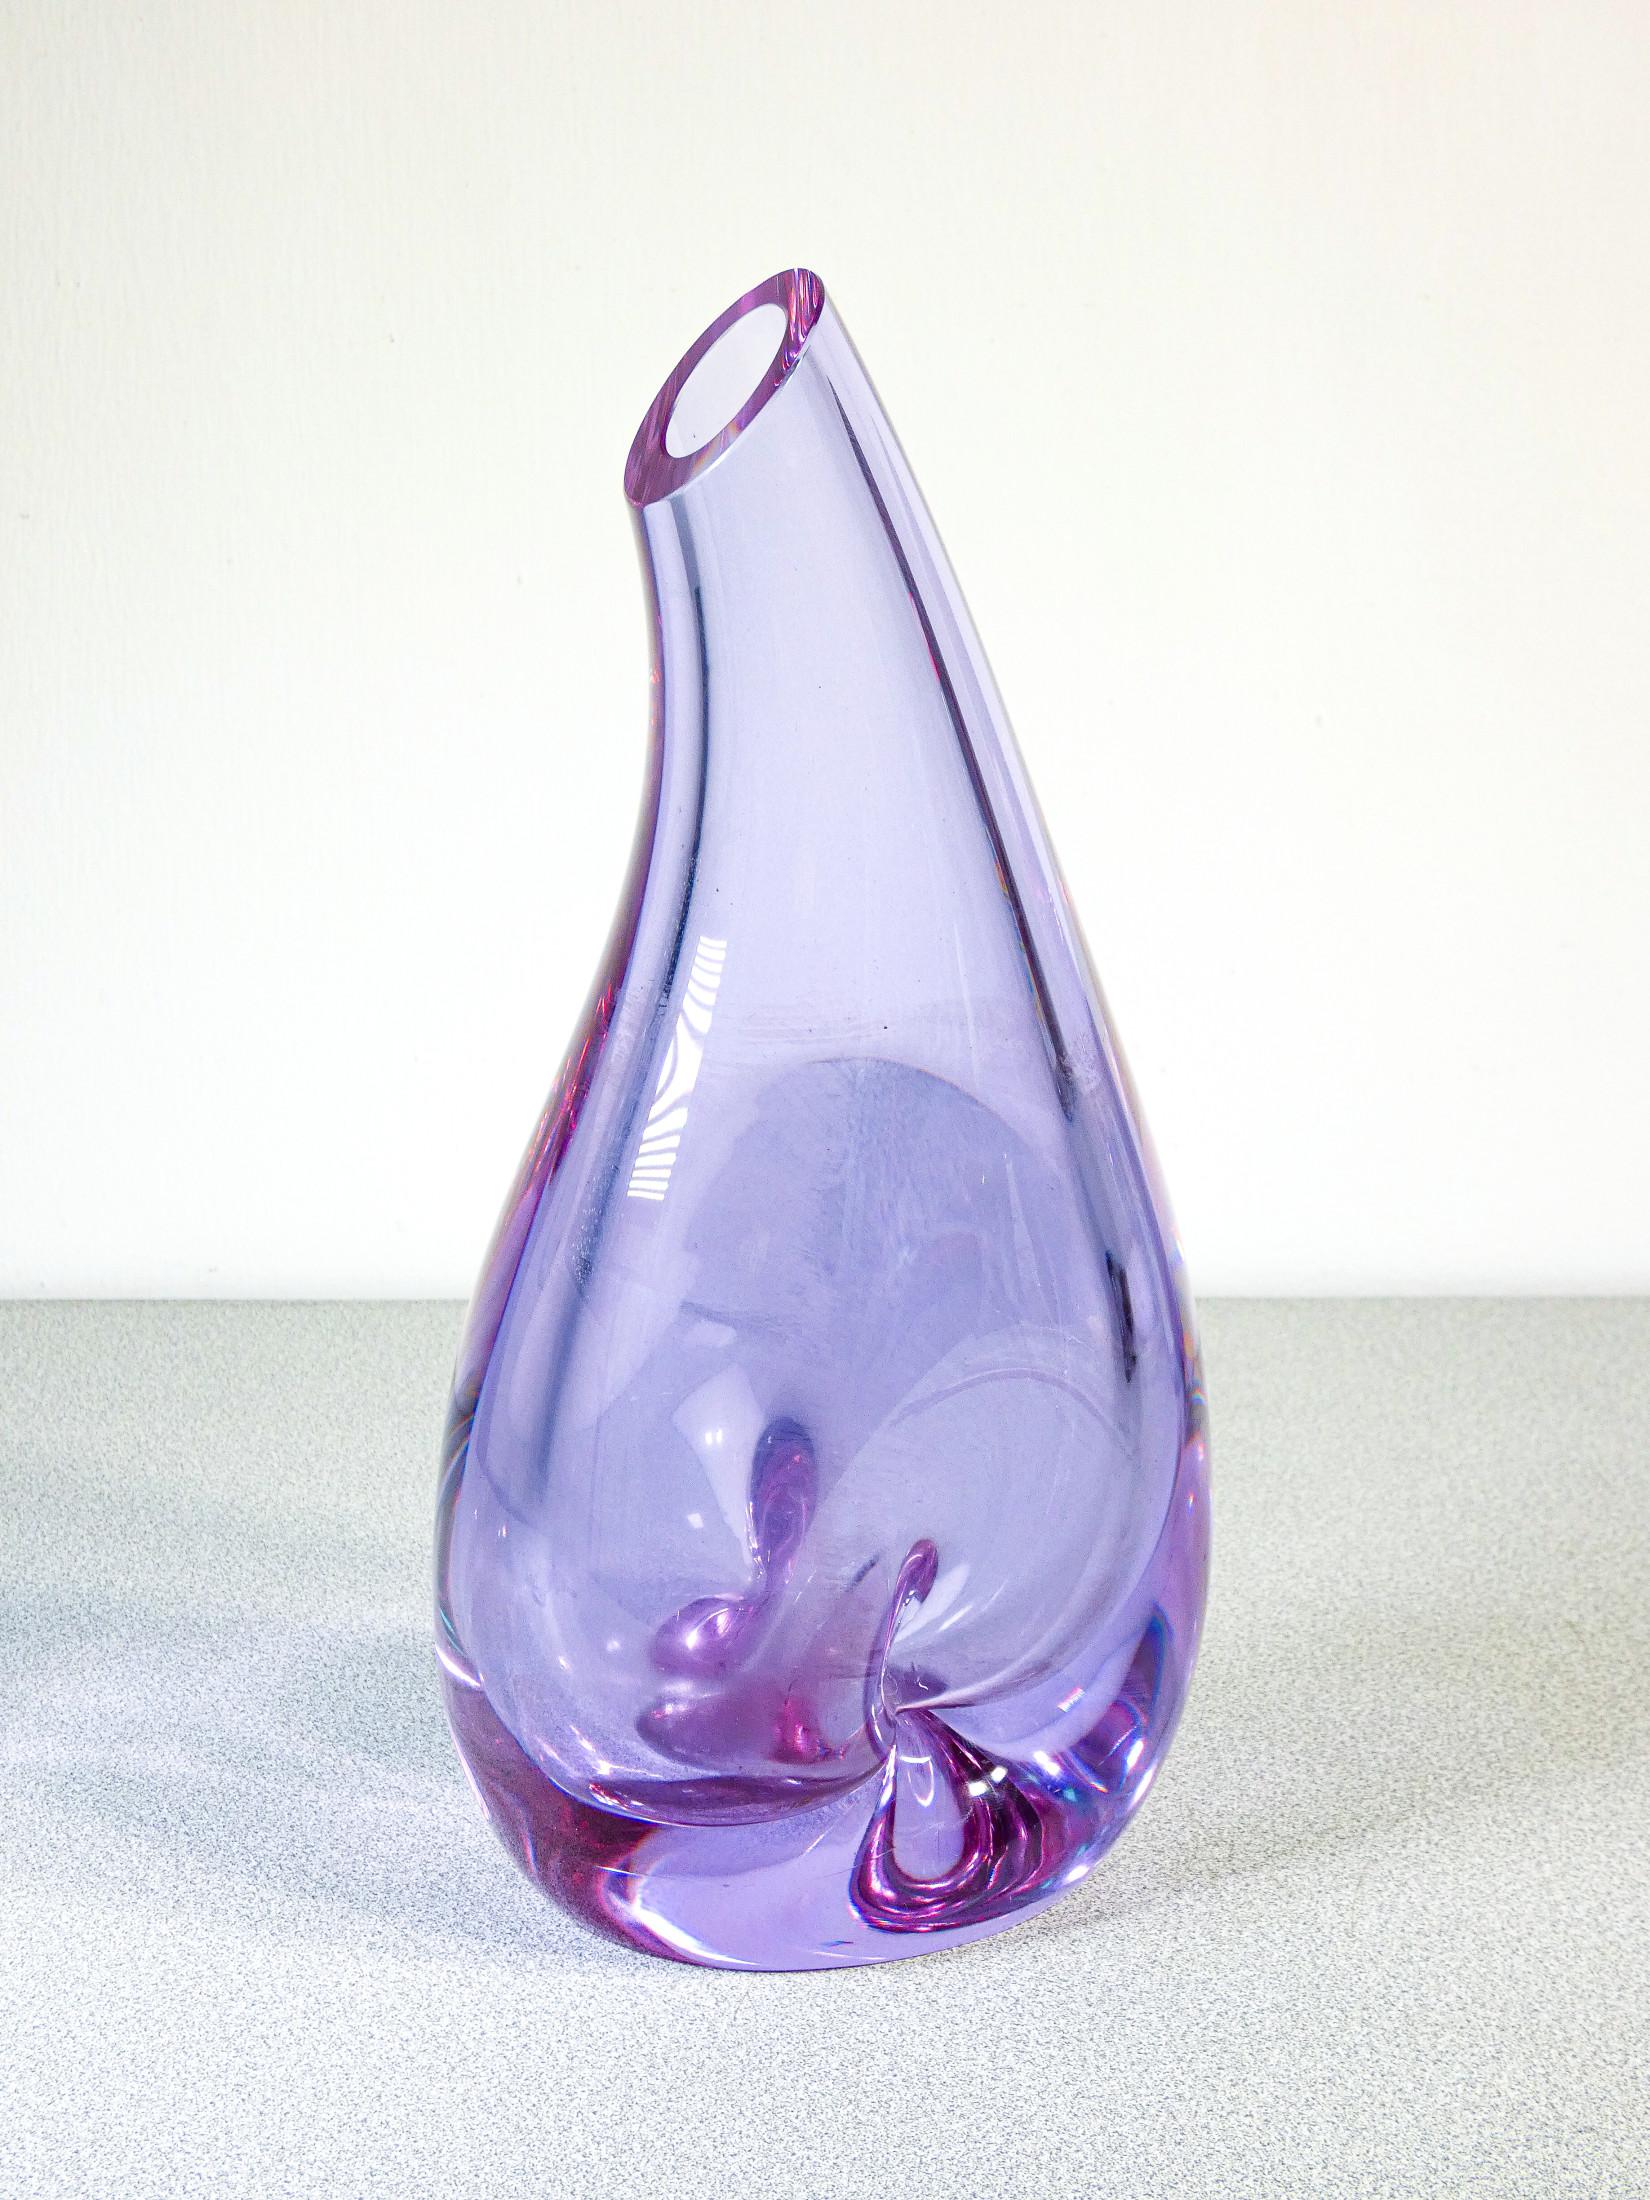 Vase en verre soufflé
de SEVRES.
Les couleurs varient
de manière appréciable à
en fonction de la lumière,
du bleu au violet.

ORIGINE
France

PÉRIODE
1980s

MARQUE
SEVRES
(signé en bas)

MATÉRIAUX
Verre soufflé

DIMENSIONS
Hauteur : 30 cm
Largeur :